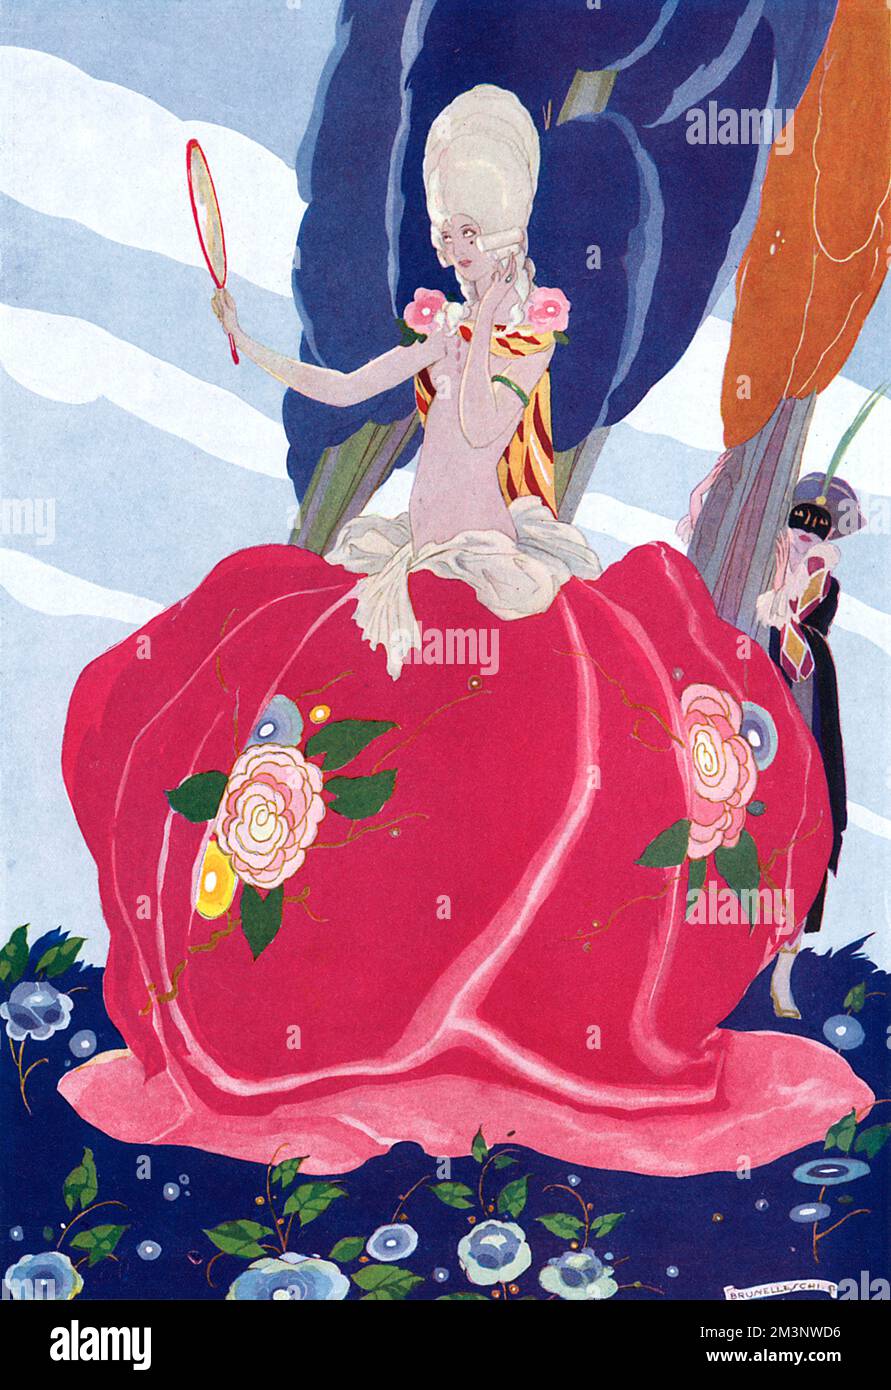 Die stilisierte Illustration zeigt eine schöne Frau in einem Kostüm aus dem 18.. Jahrhundert, das eine Rose repräsentiert, und bewundert ihr Spiegelbild, wie ein maskierter Harlekin sie hinter einem Baum beobachtet. Datum: 1927 Stockfoto